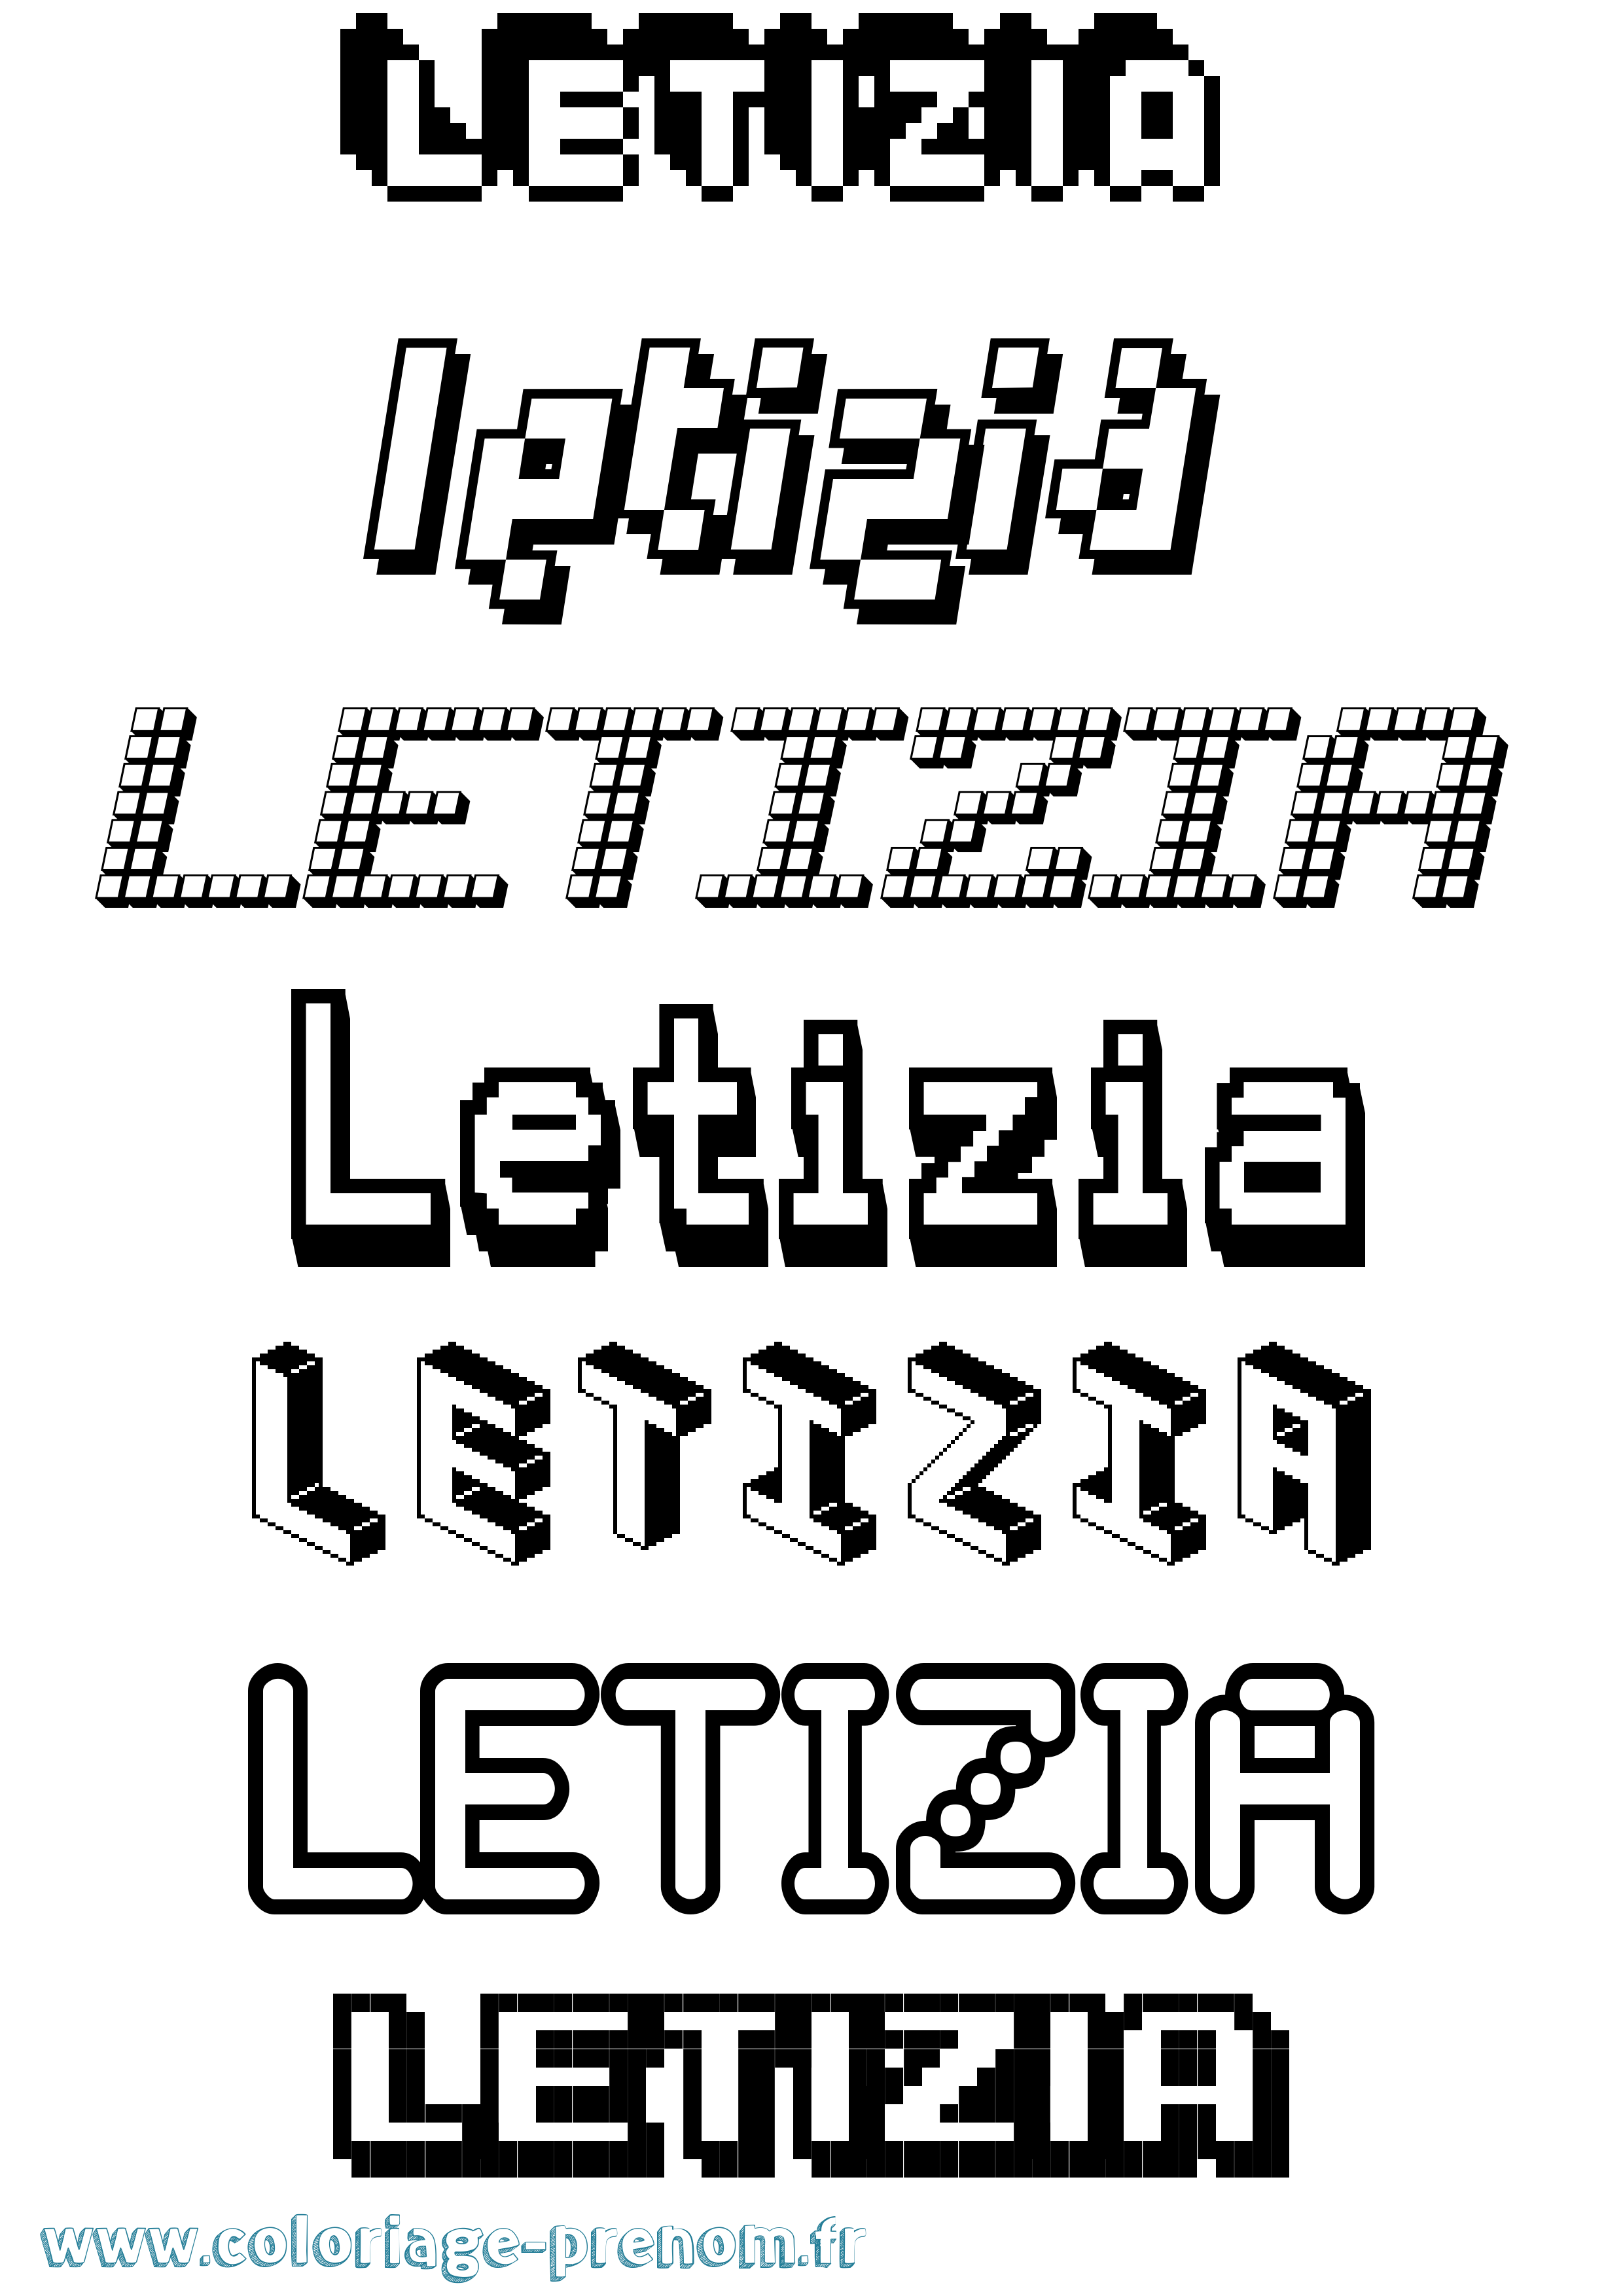 Coloriage prénom Letizia Pixel